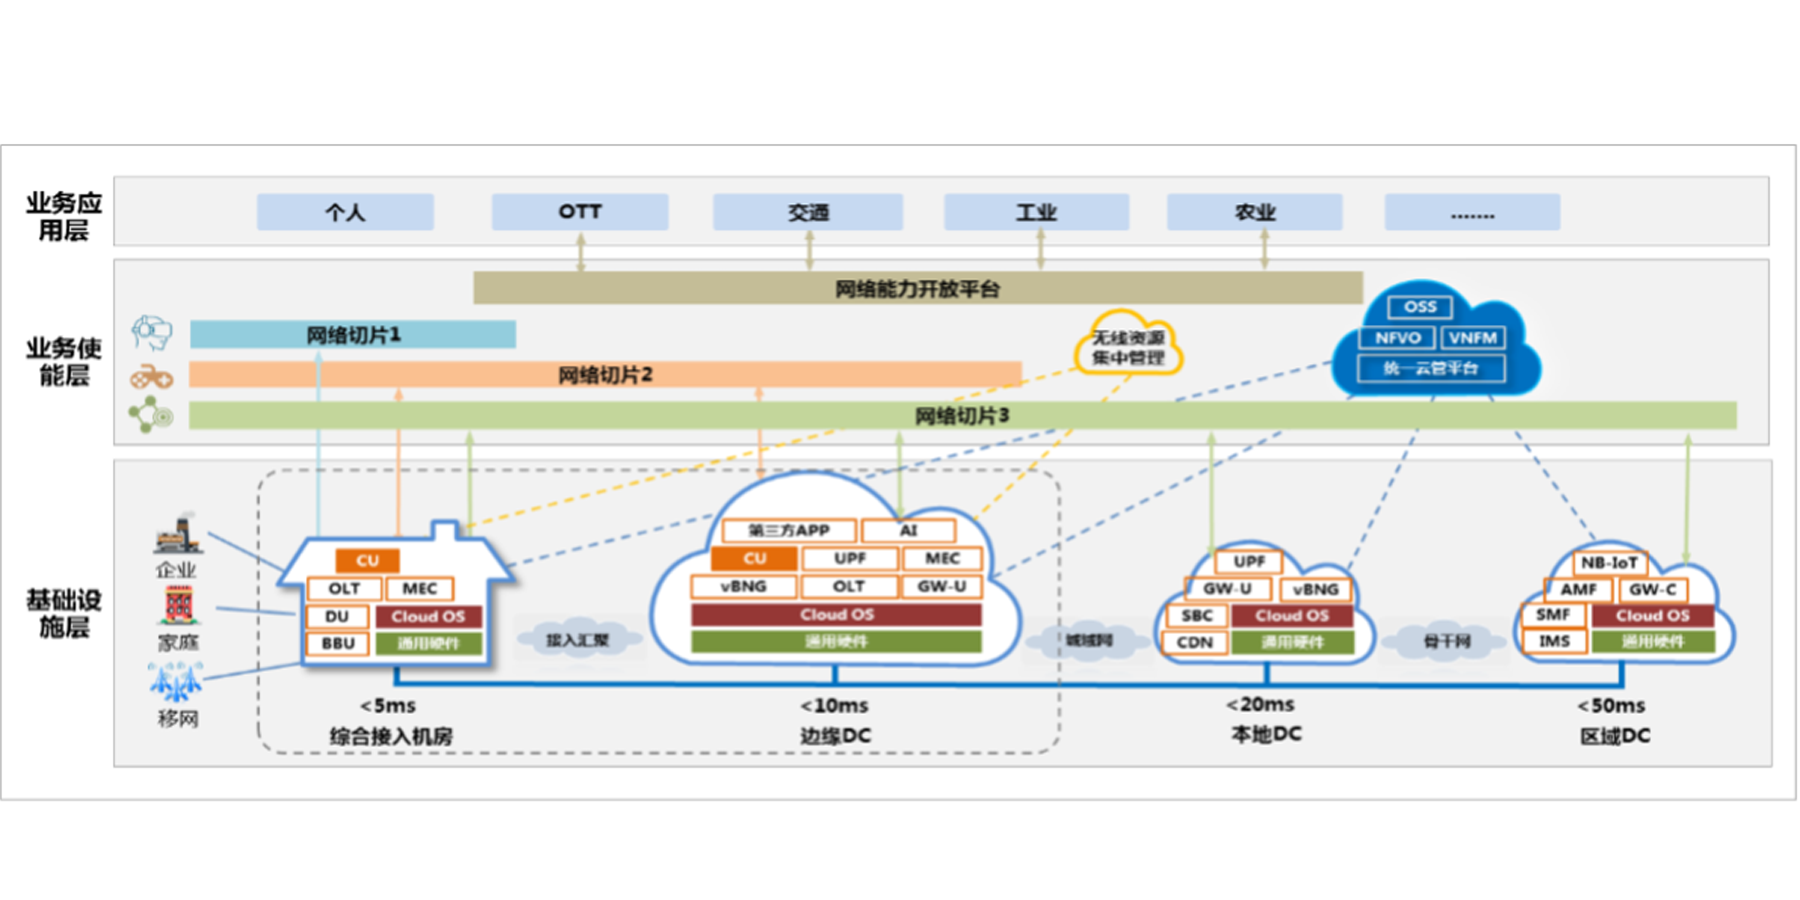 Open MEC 5G+ & Compute-First Networking – Jiangsu Unicom’s Smart Park Pilot working alongside Juniper Networks and Partners